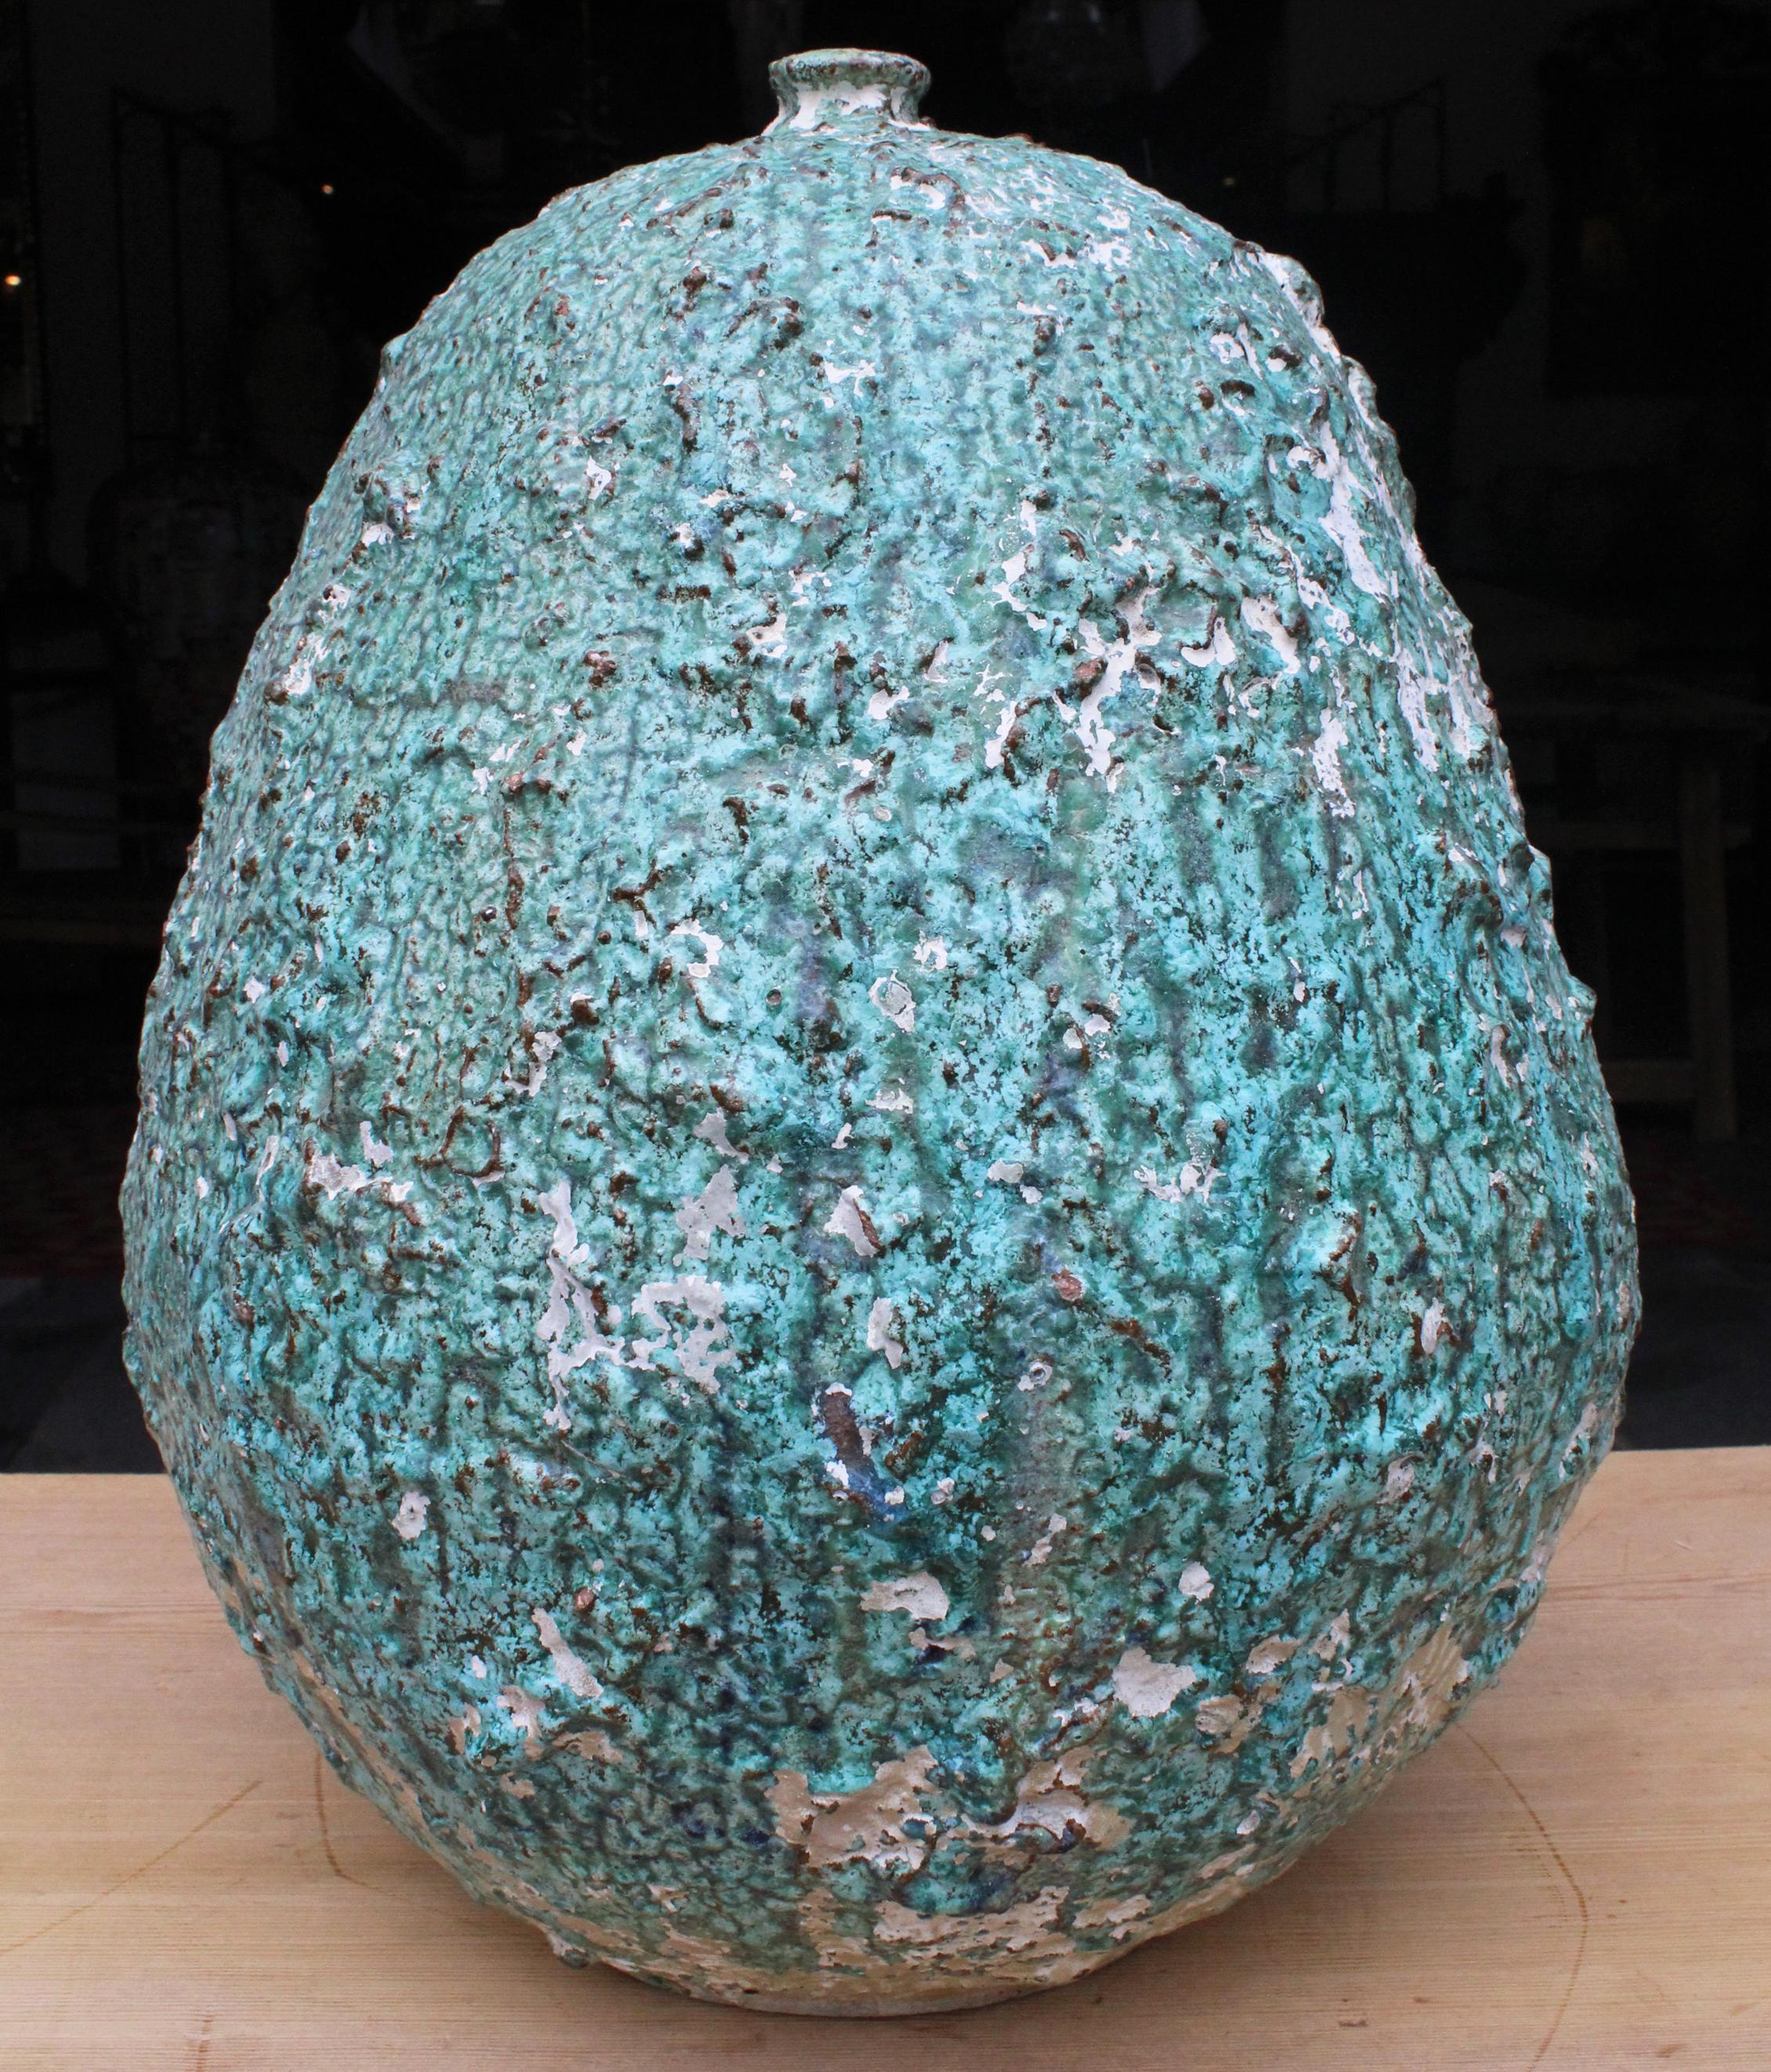 1970s Modern Ceramic Art Vase Signed by Eimers F. (20. Jahrhundert)